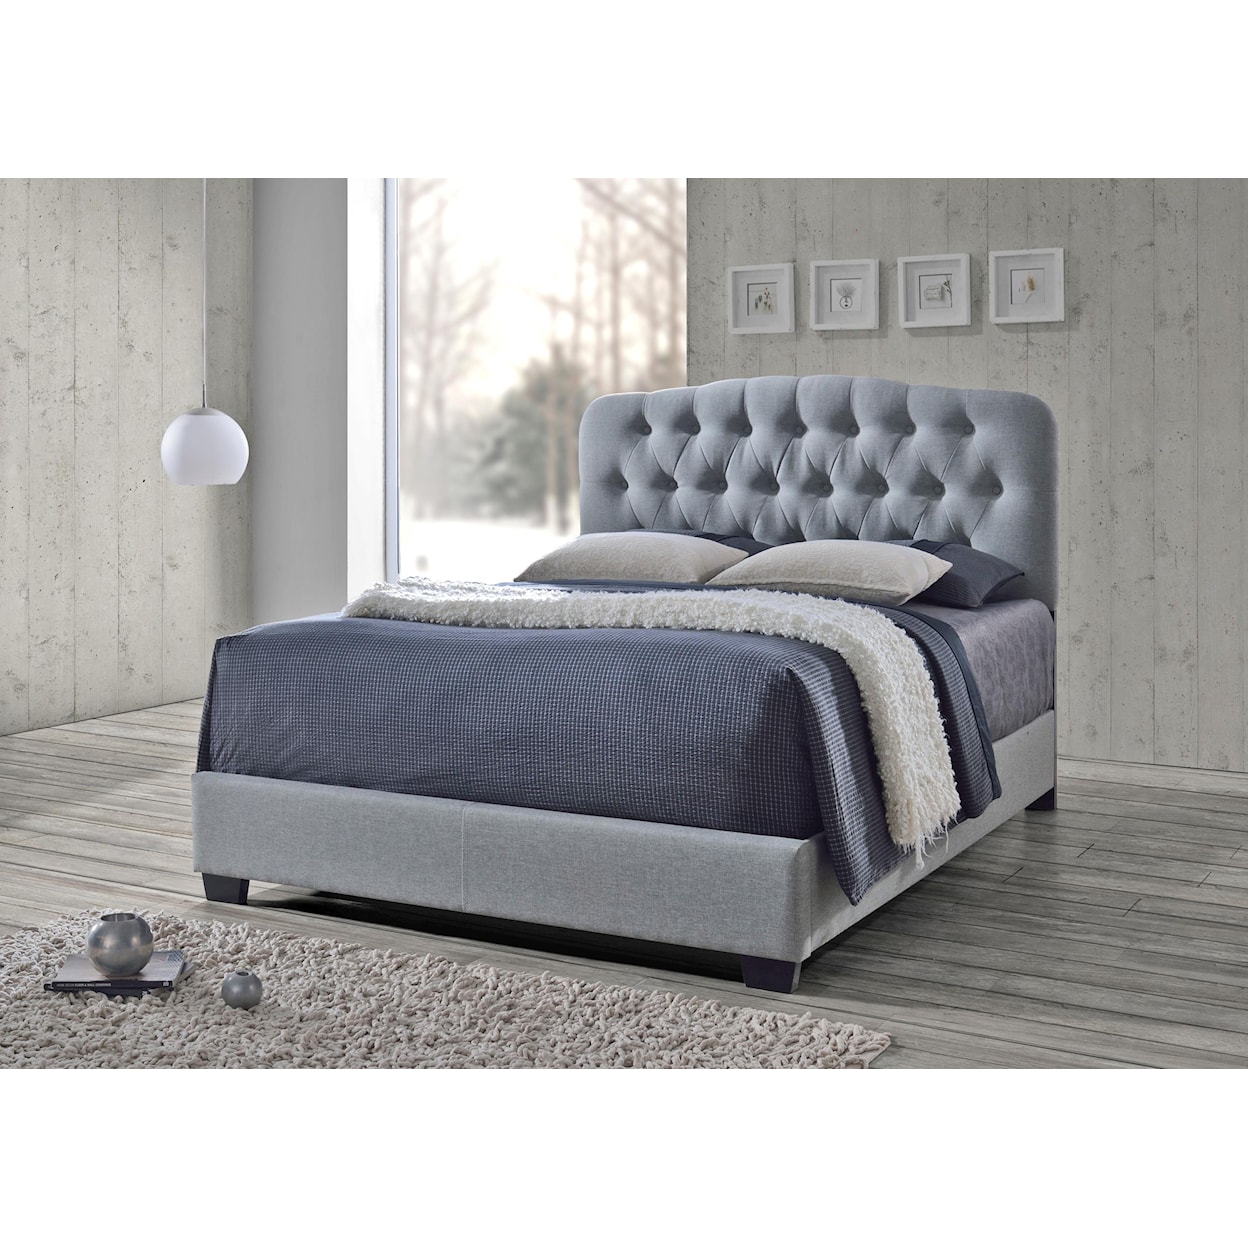 CM Tilda 5274 Tilda Upholstered Bed